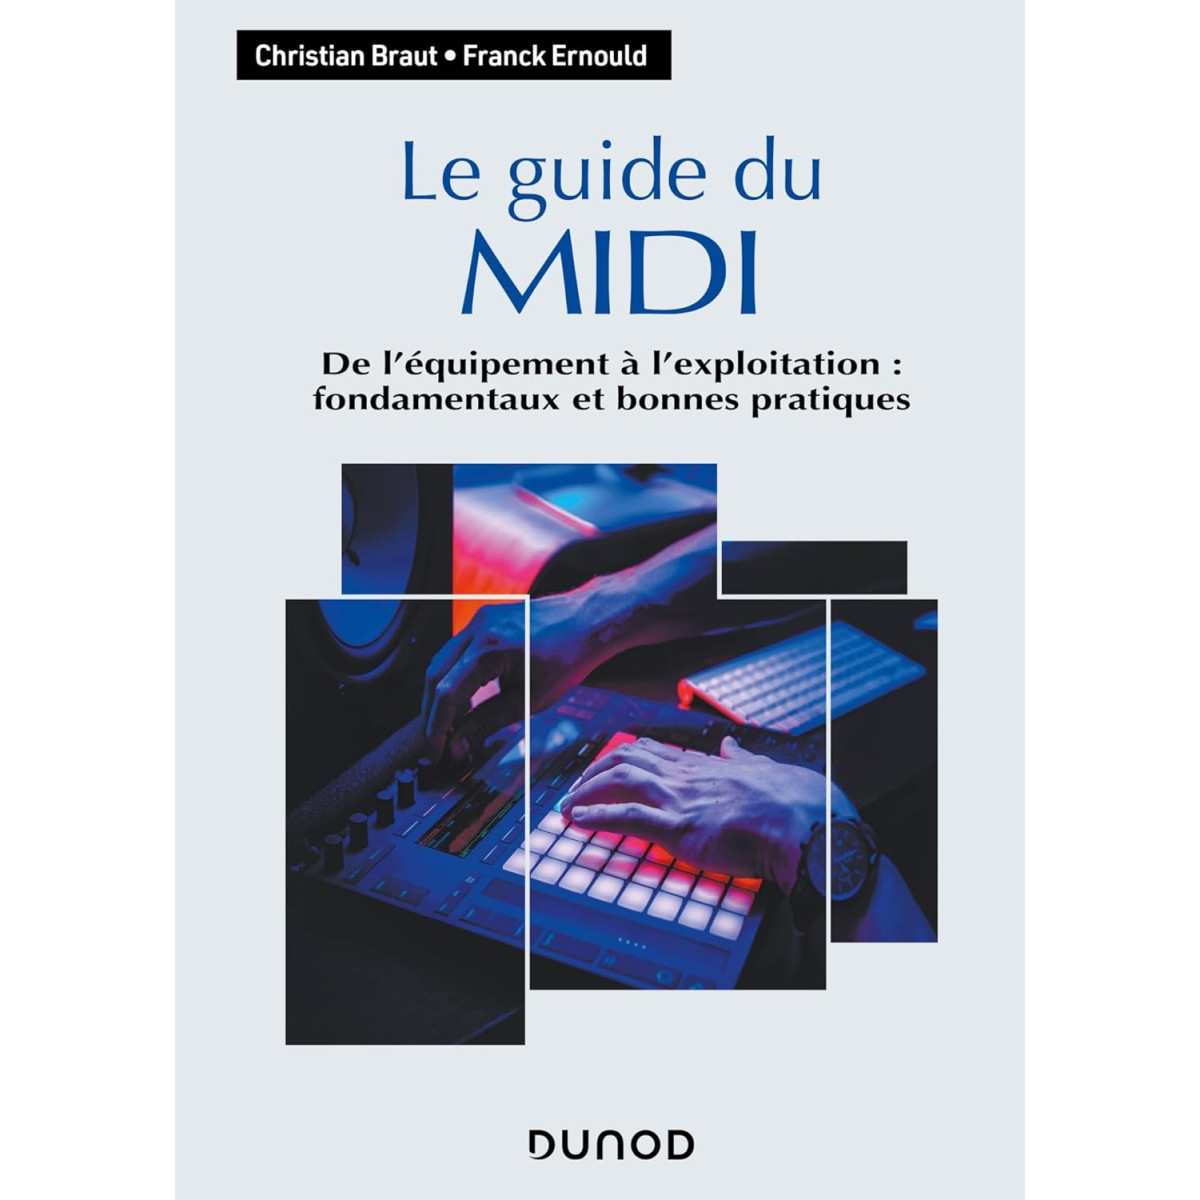 Le guide du MIDI: De l'équipement à l'exploitation : fondamentaux et bonnes pratiques